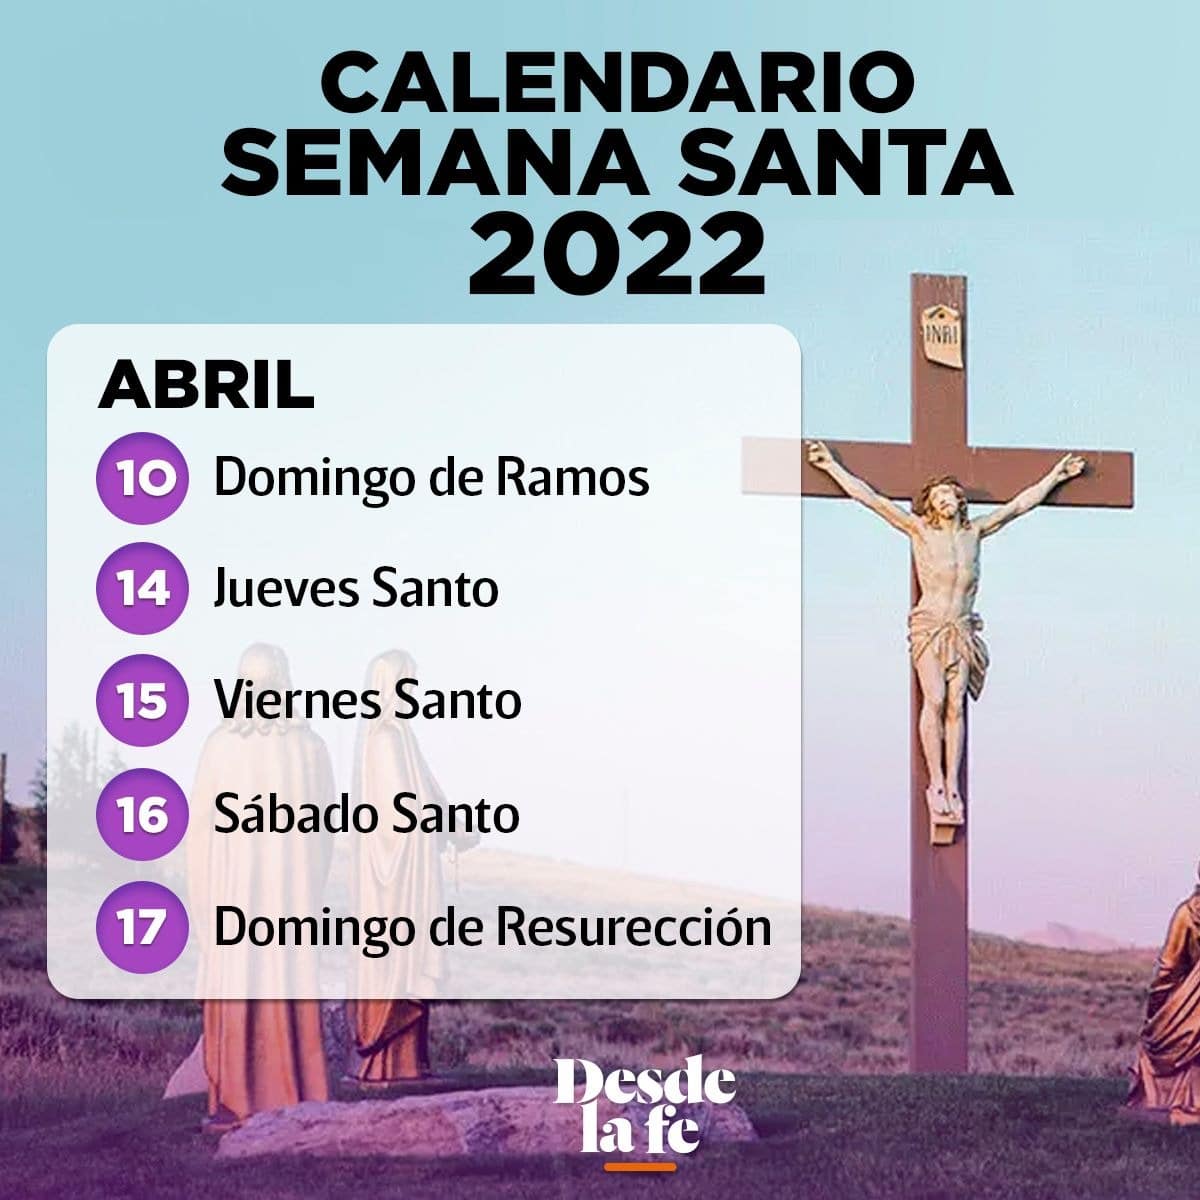 La Fiesta de la Pascua 2022 caerá el domingo 17 de abril.